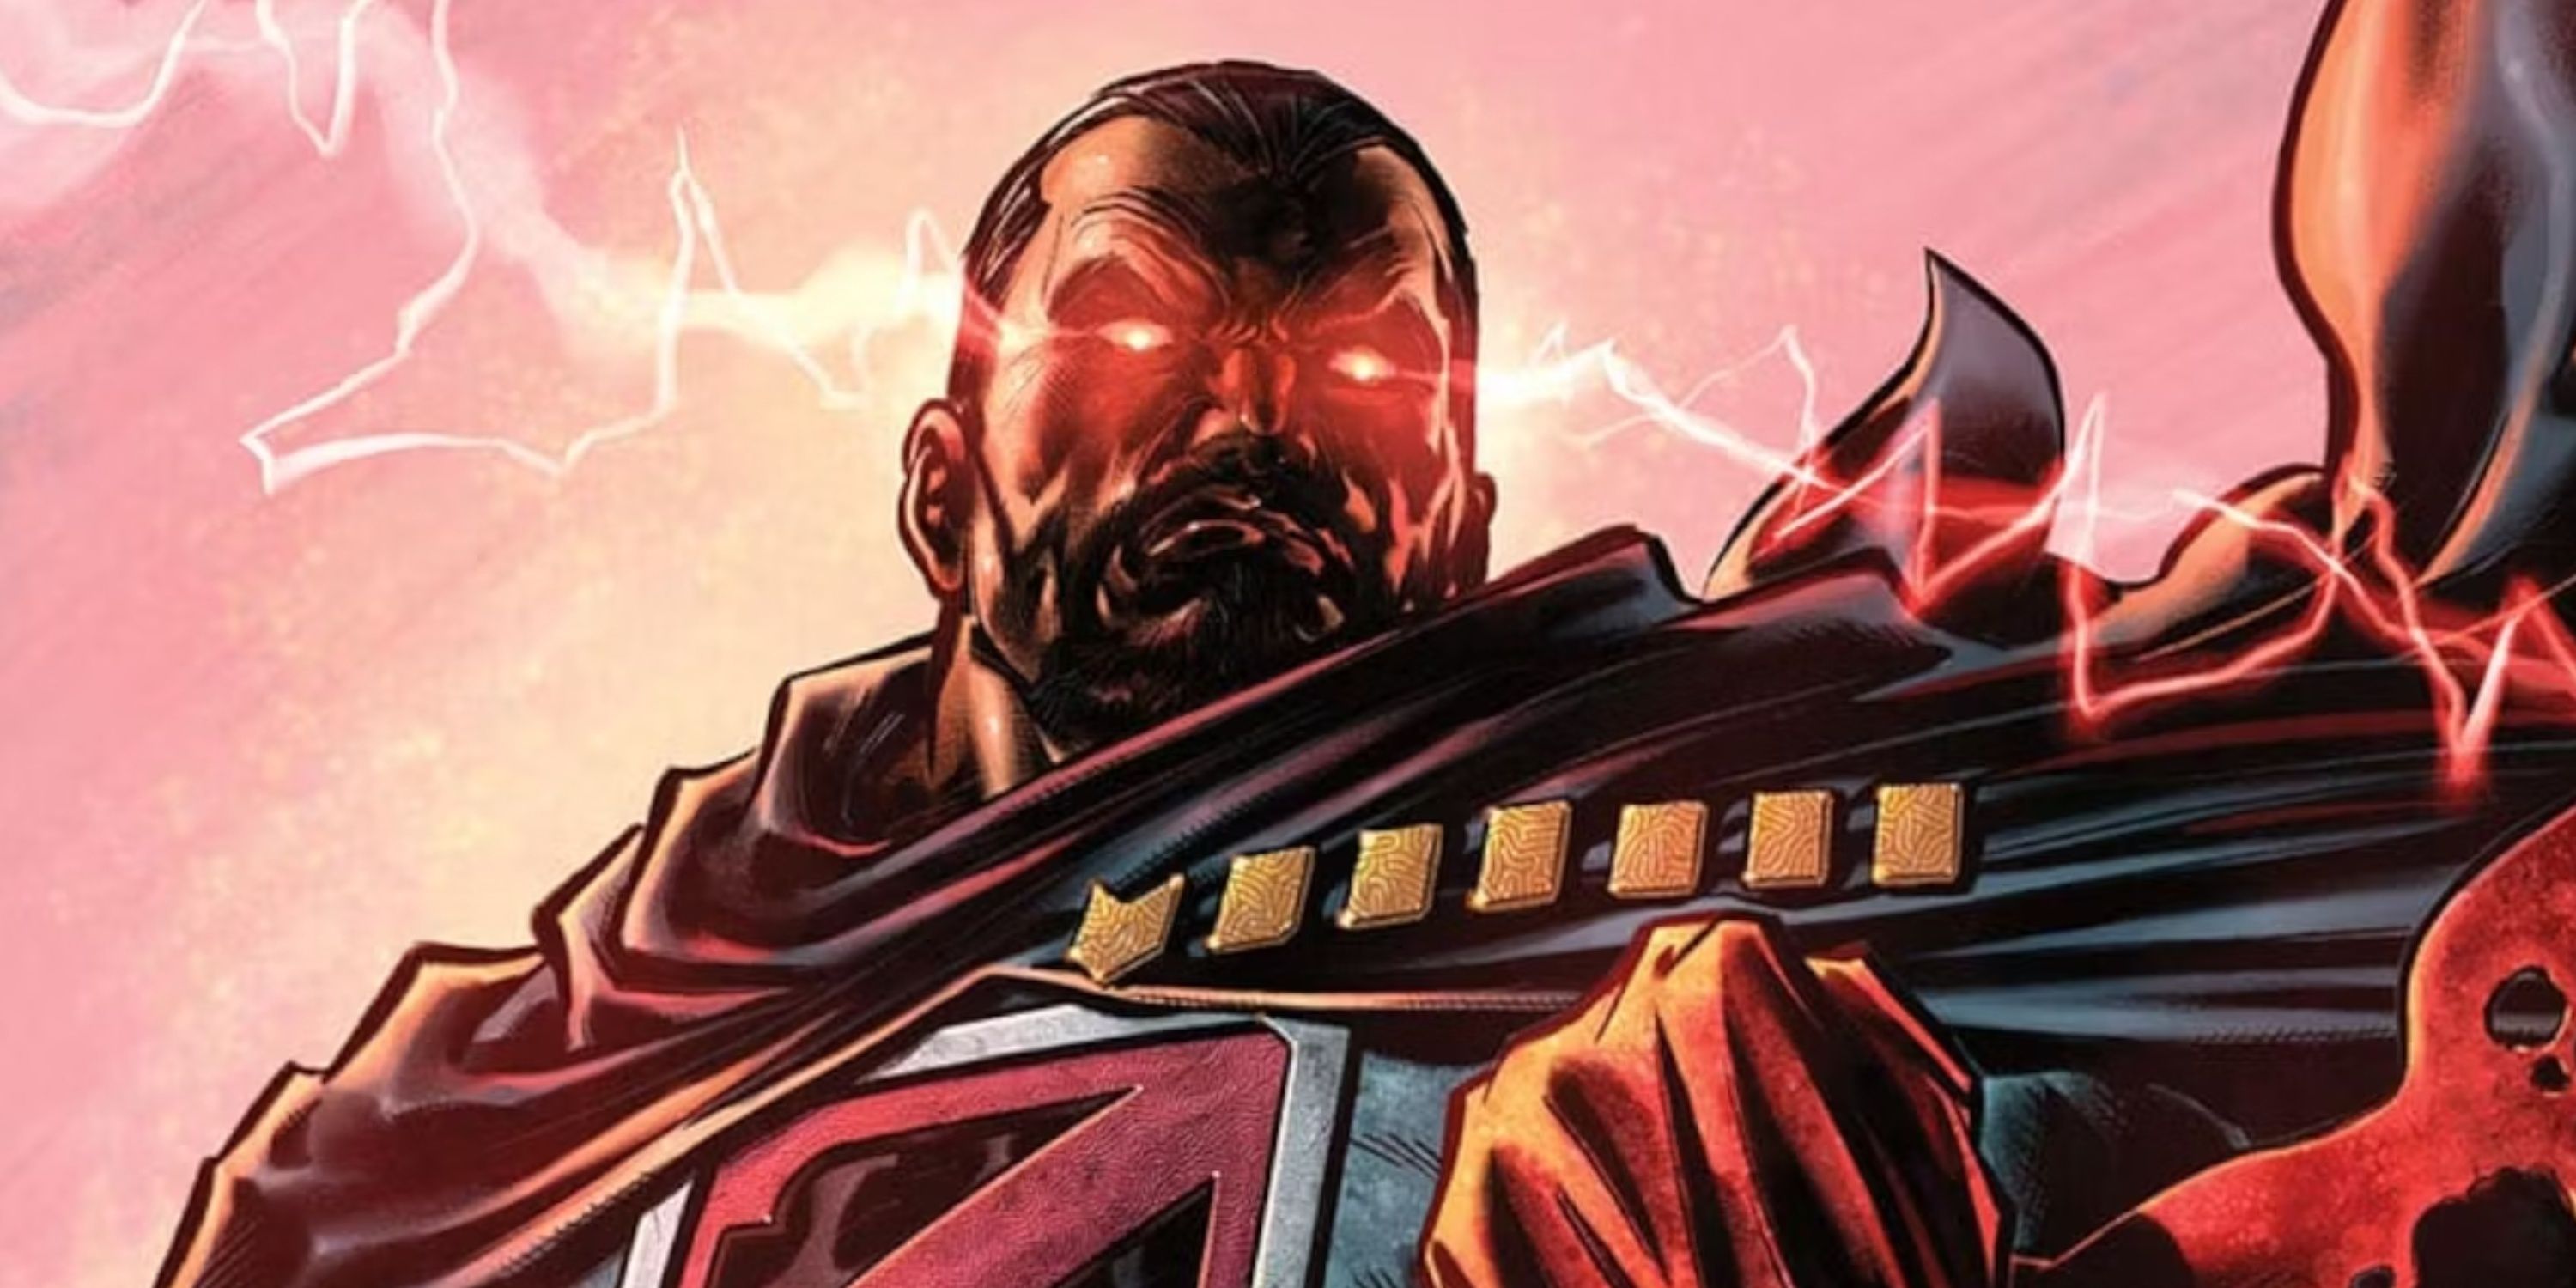 O vilão do Superman, General Zod, irradia lasers de seus olhos